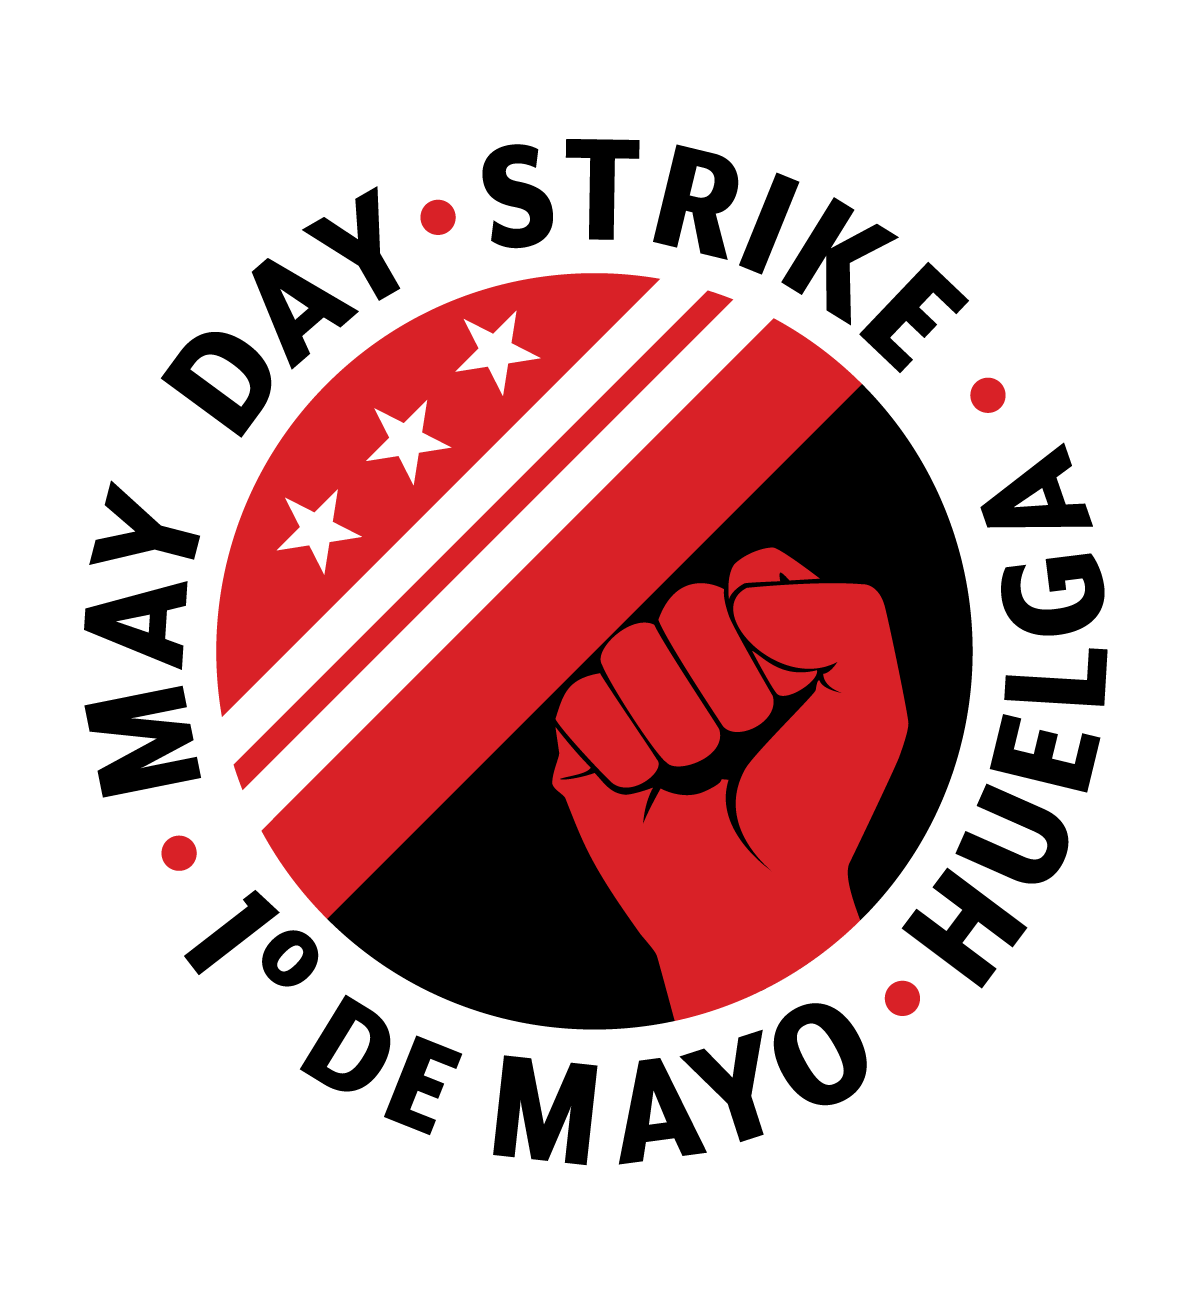 DC May Day logo